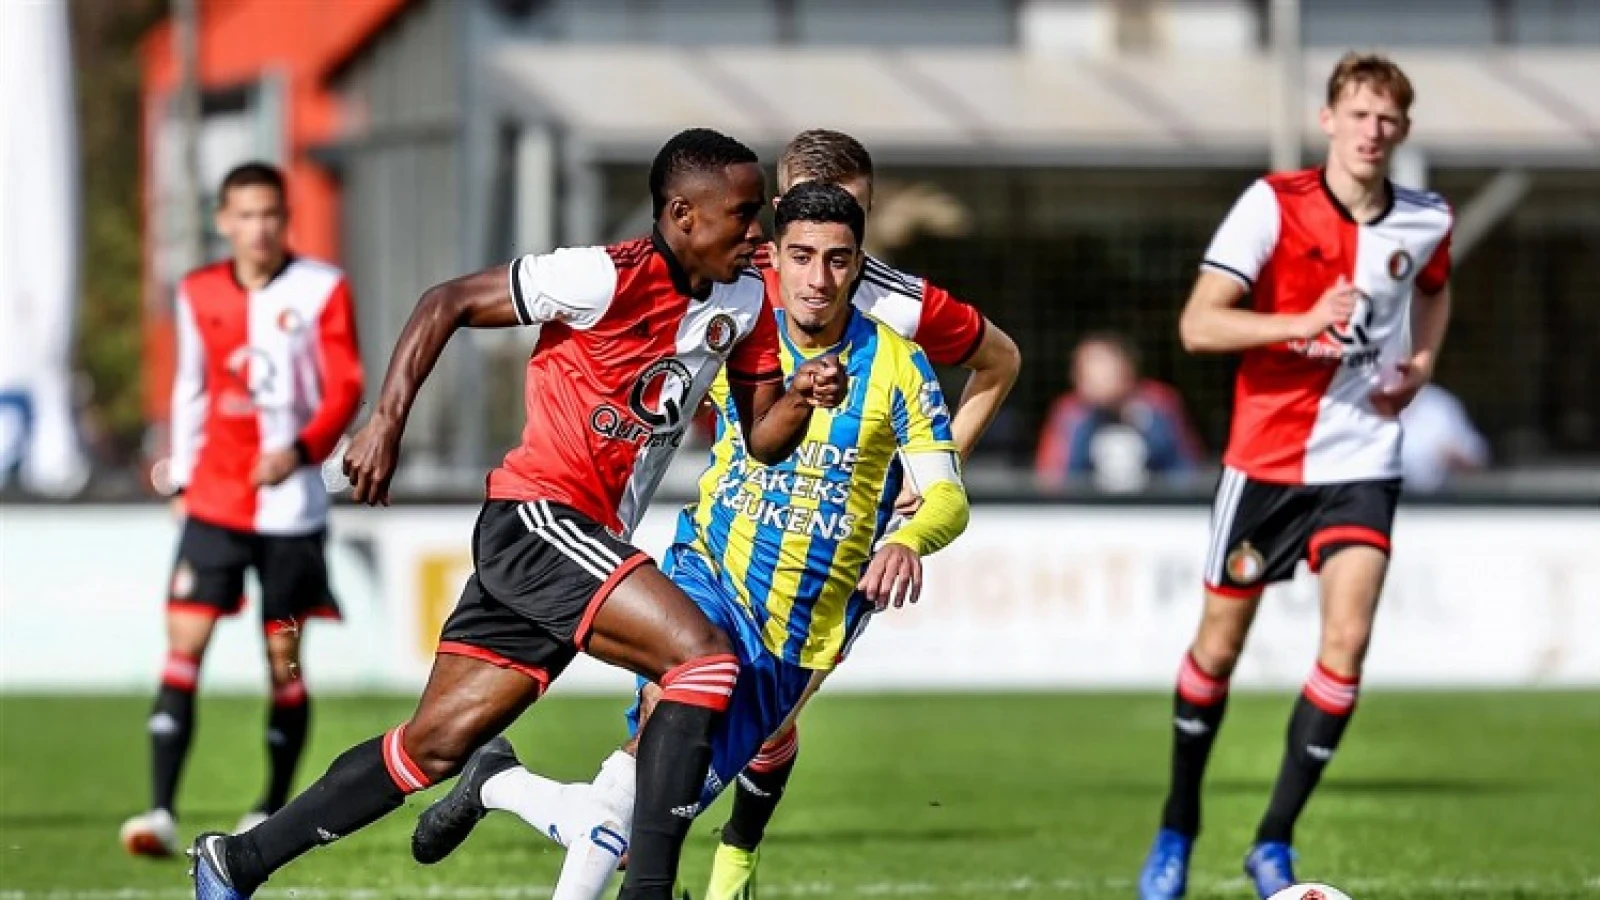 Jong Feyenoord verliest eerste wedstrijd in kampioenspoule